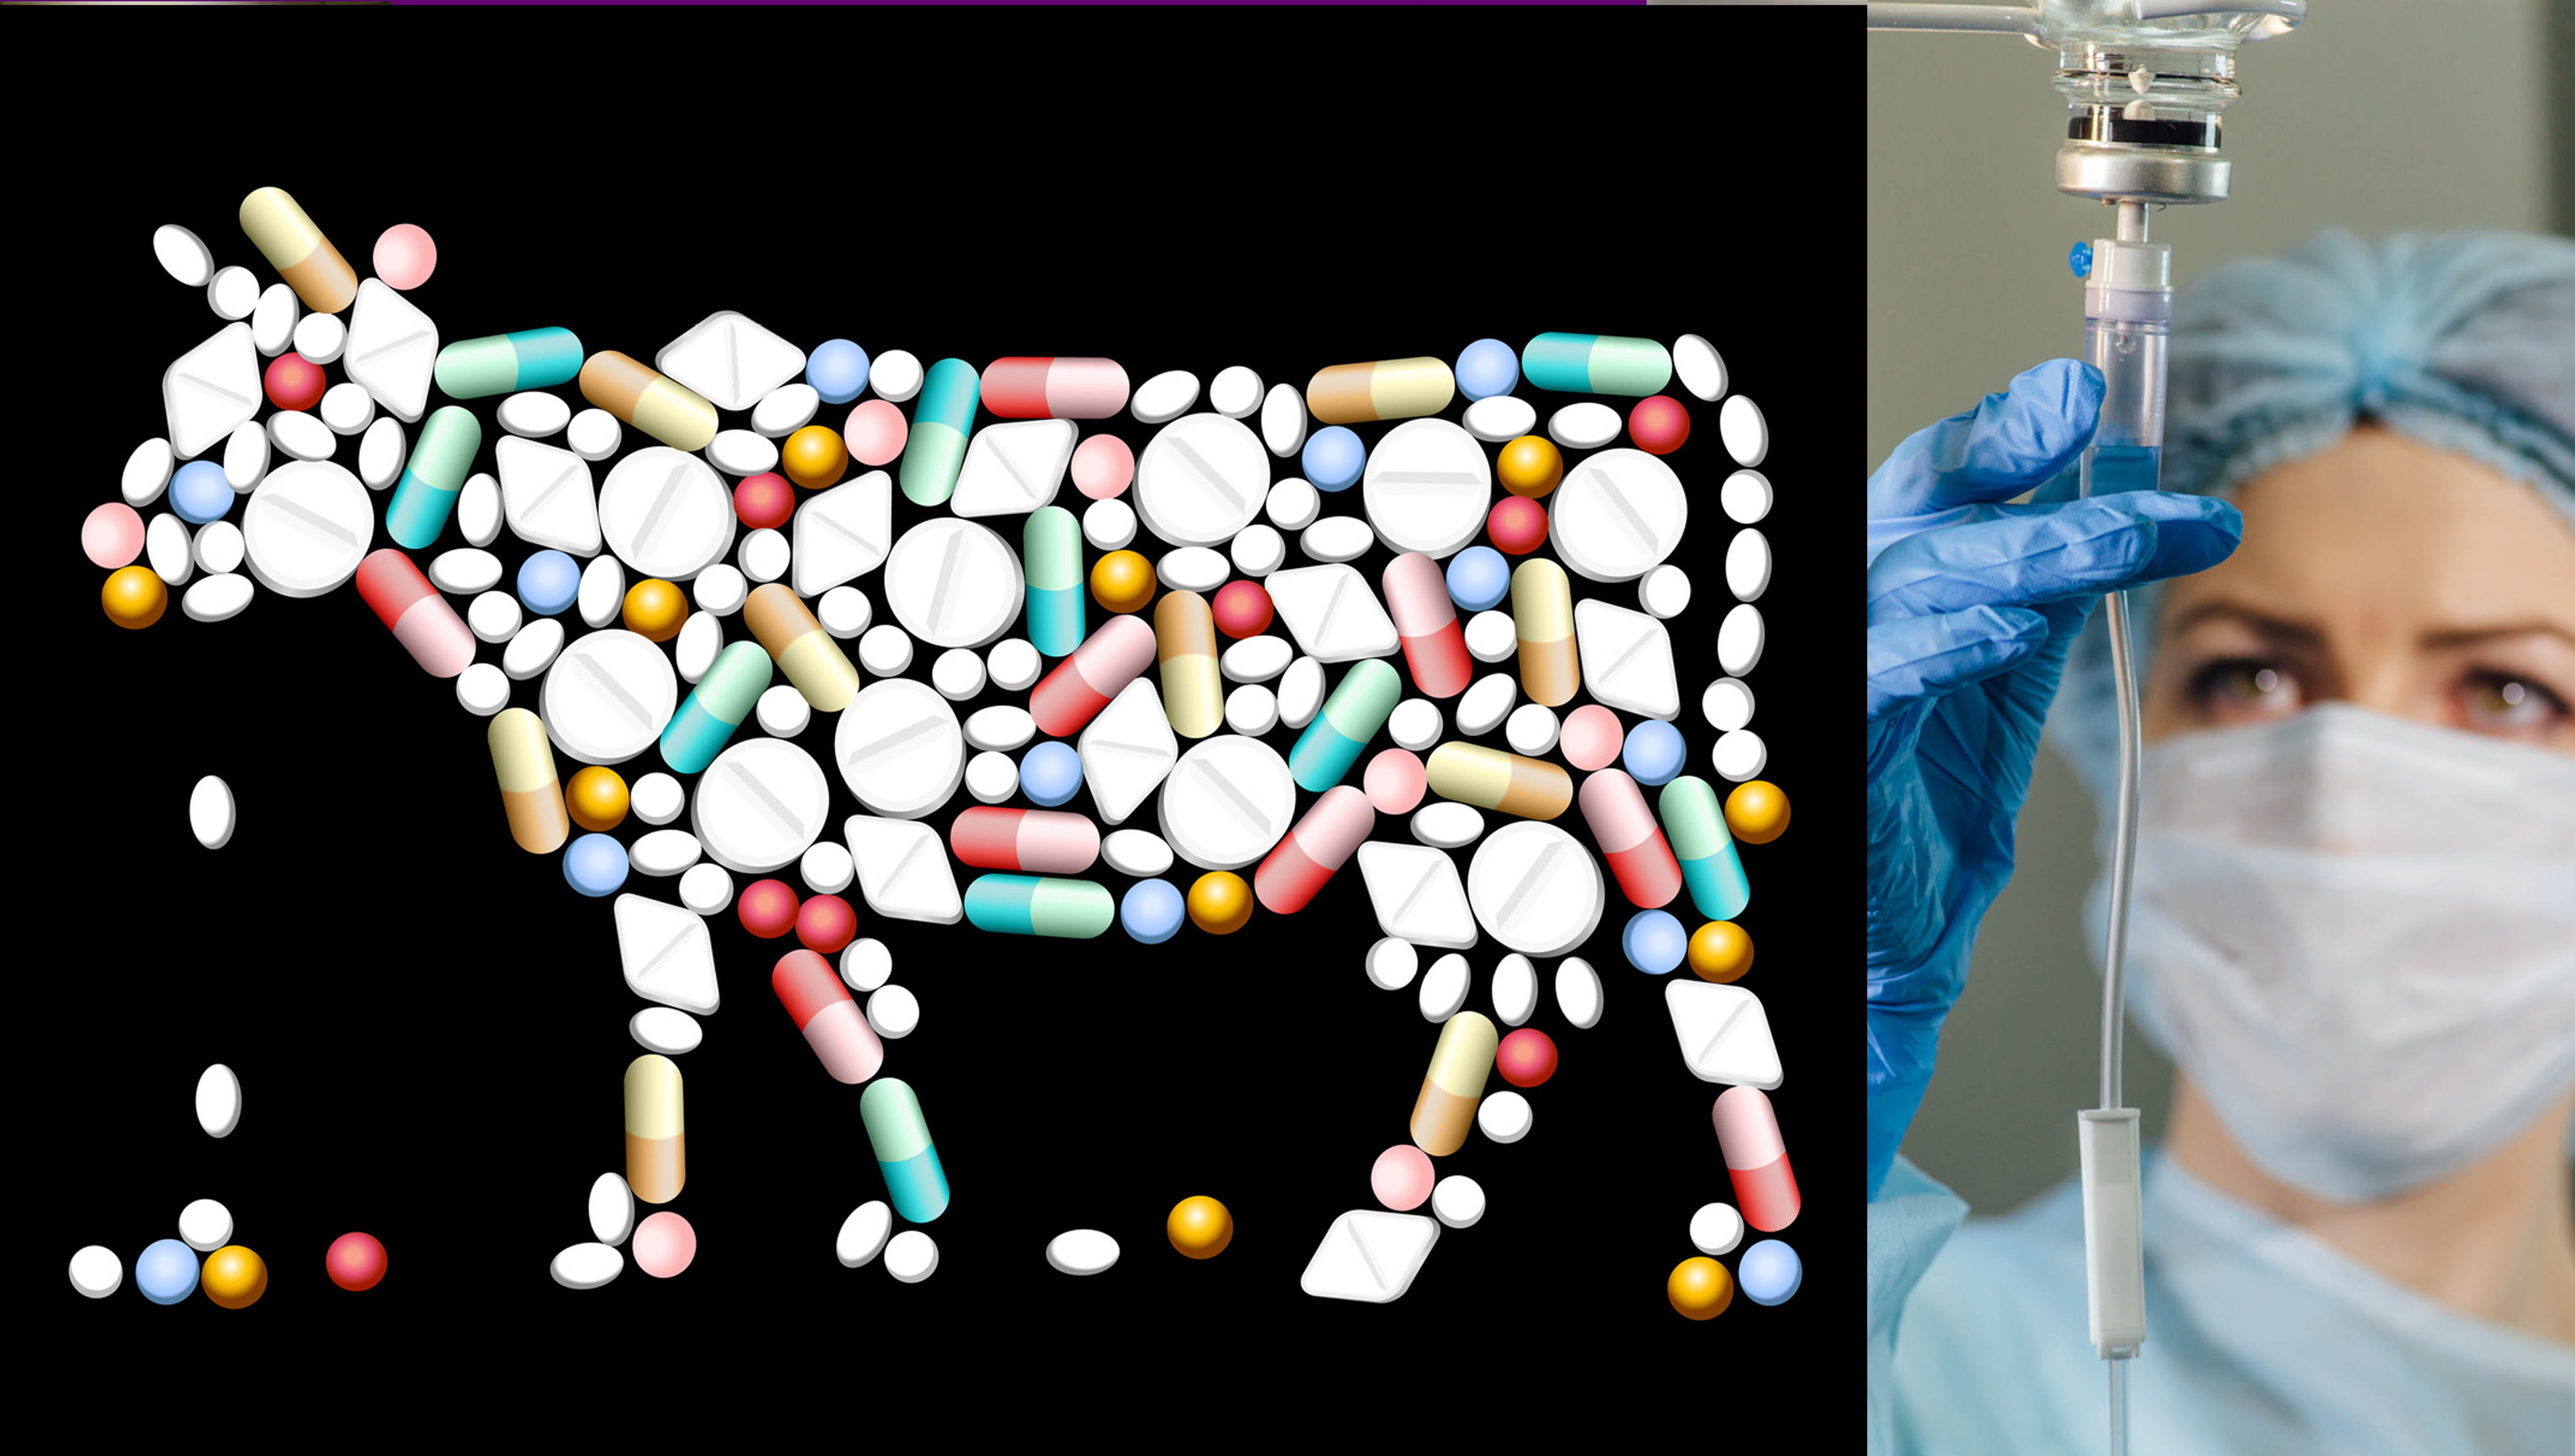 AntibiotikaVerbot für Tiere was ist da dran? Seite 4 Wild und Hund